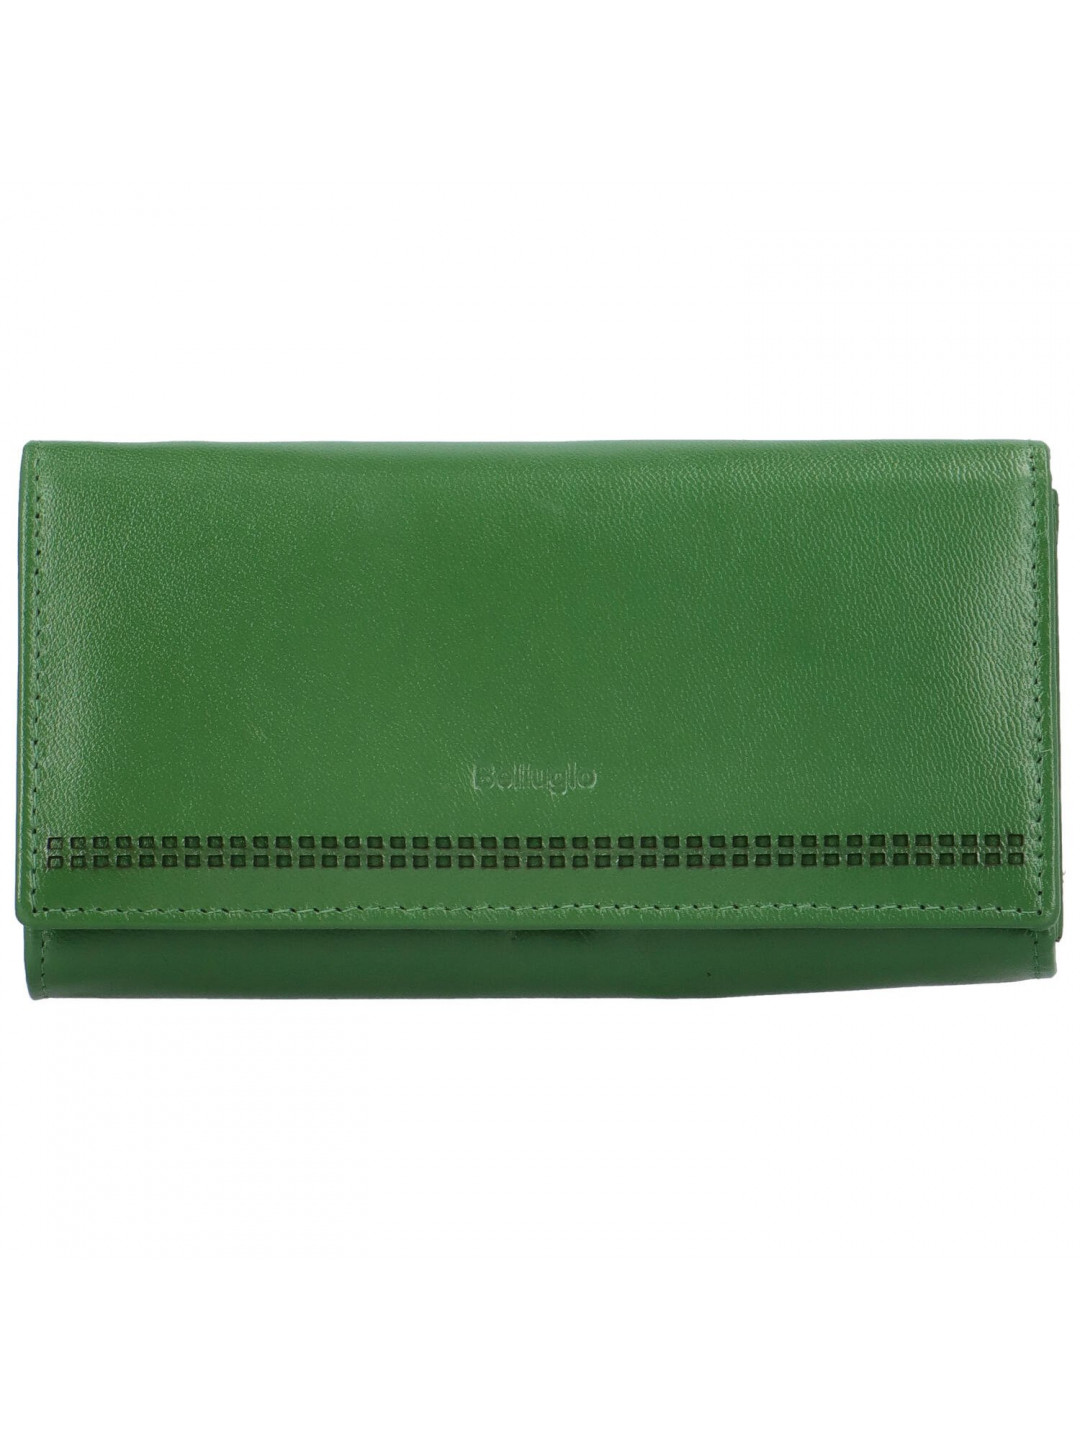 Dámská kožená peněženka zelená – Bellugio Reanda